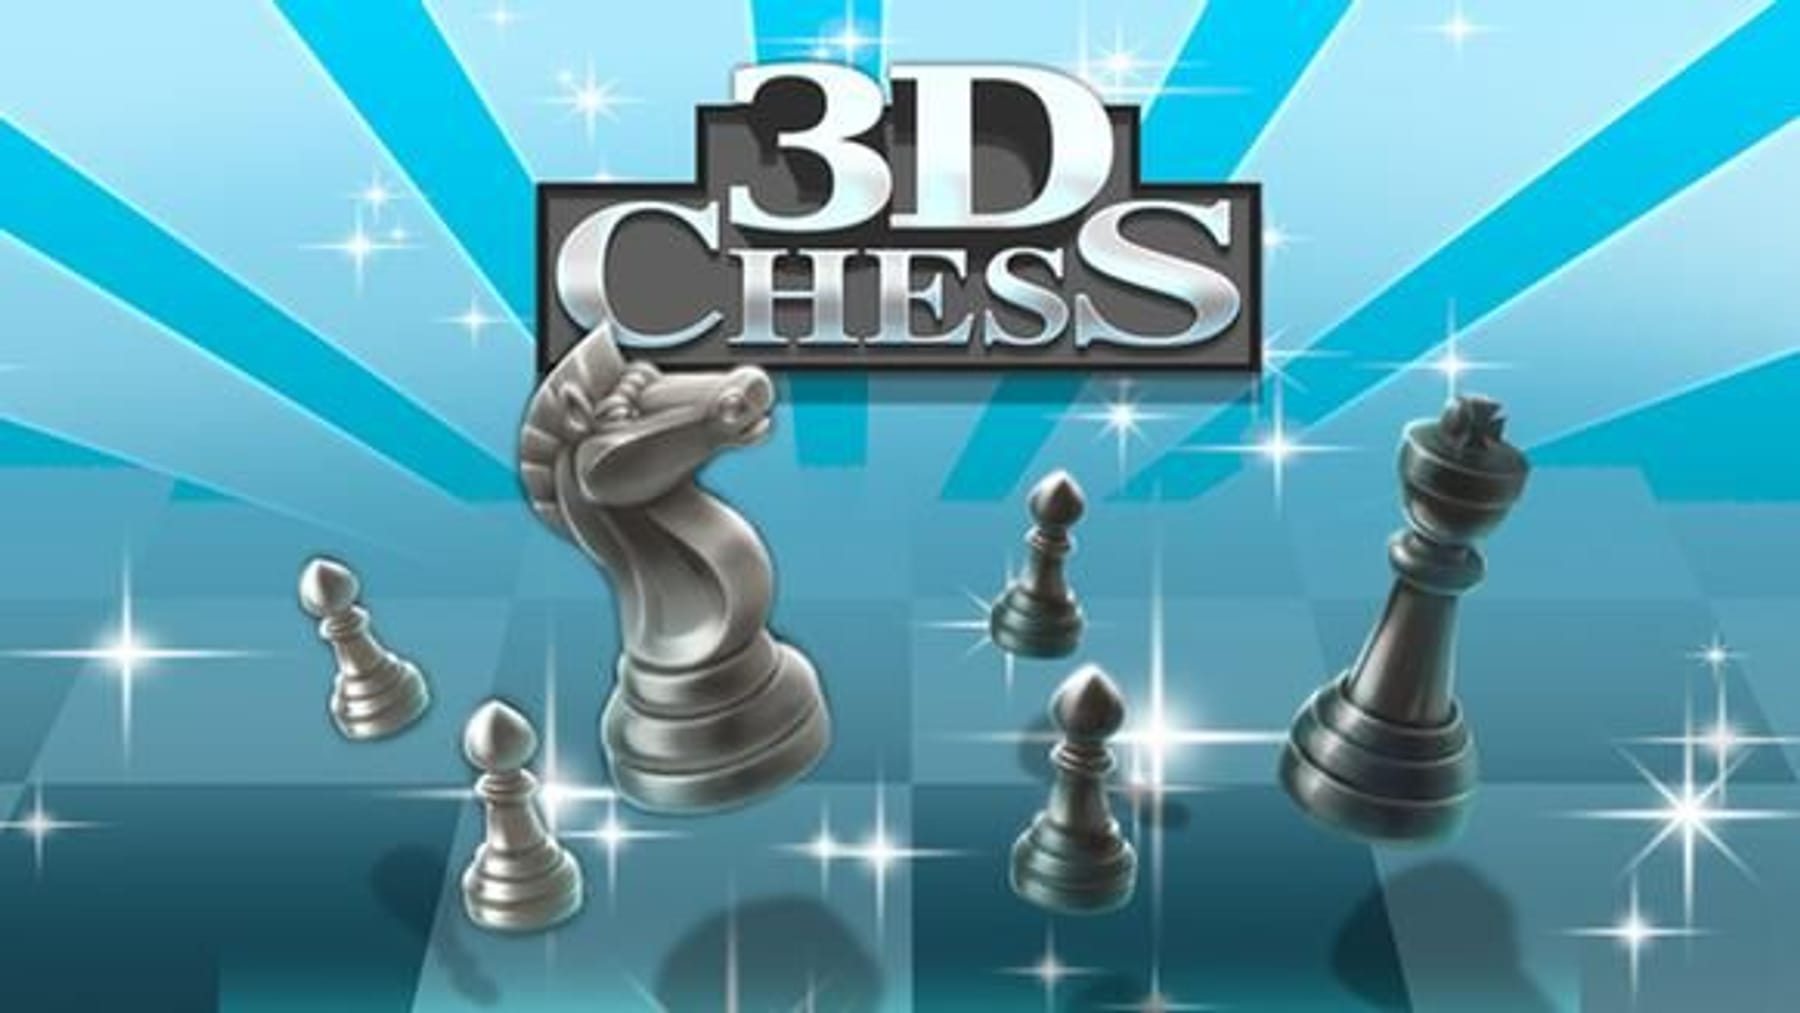 schach spielen online kostenlos ohne anmeldung